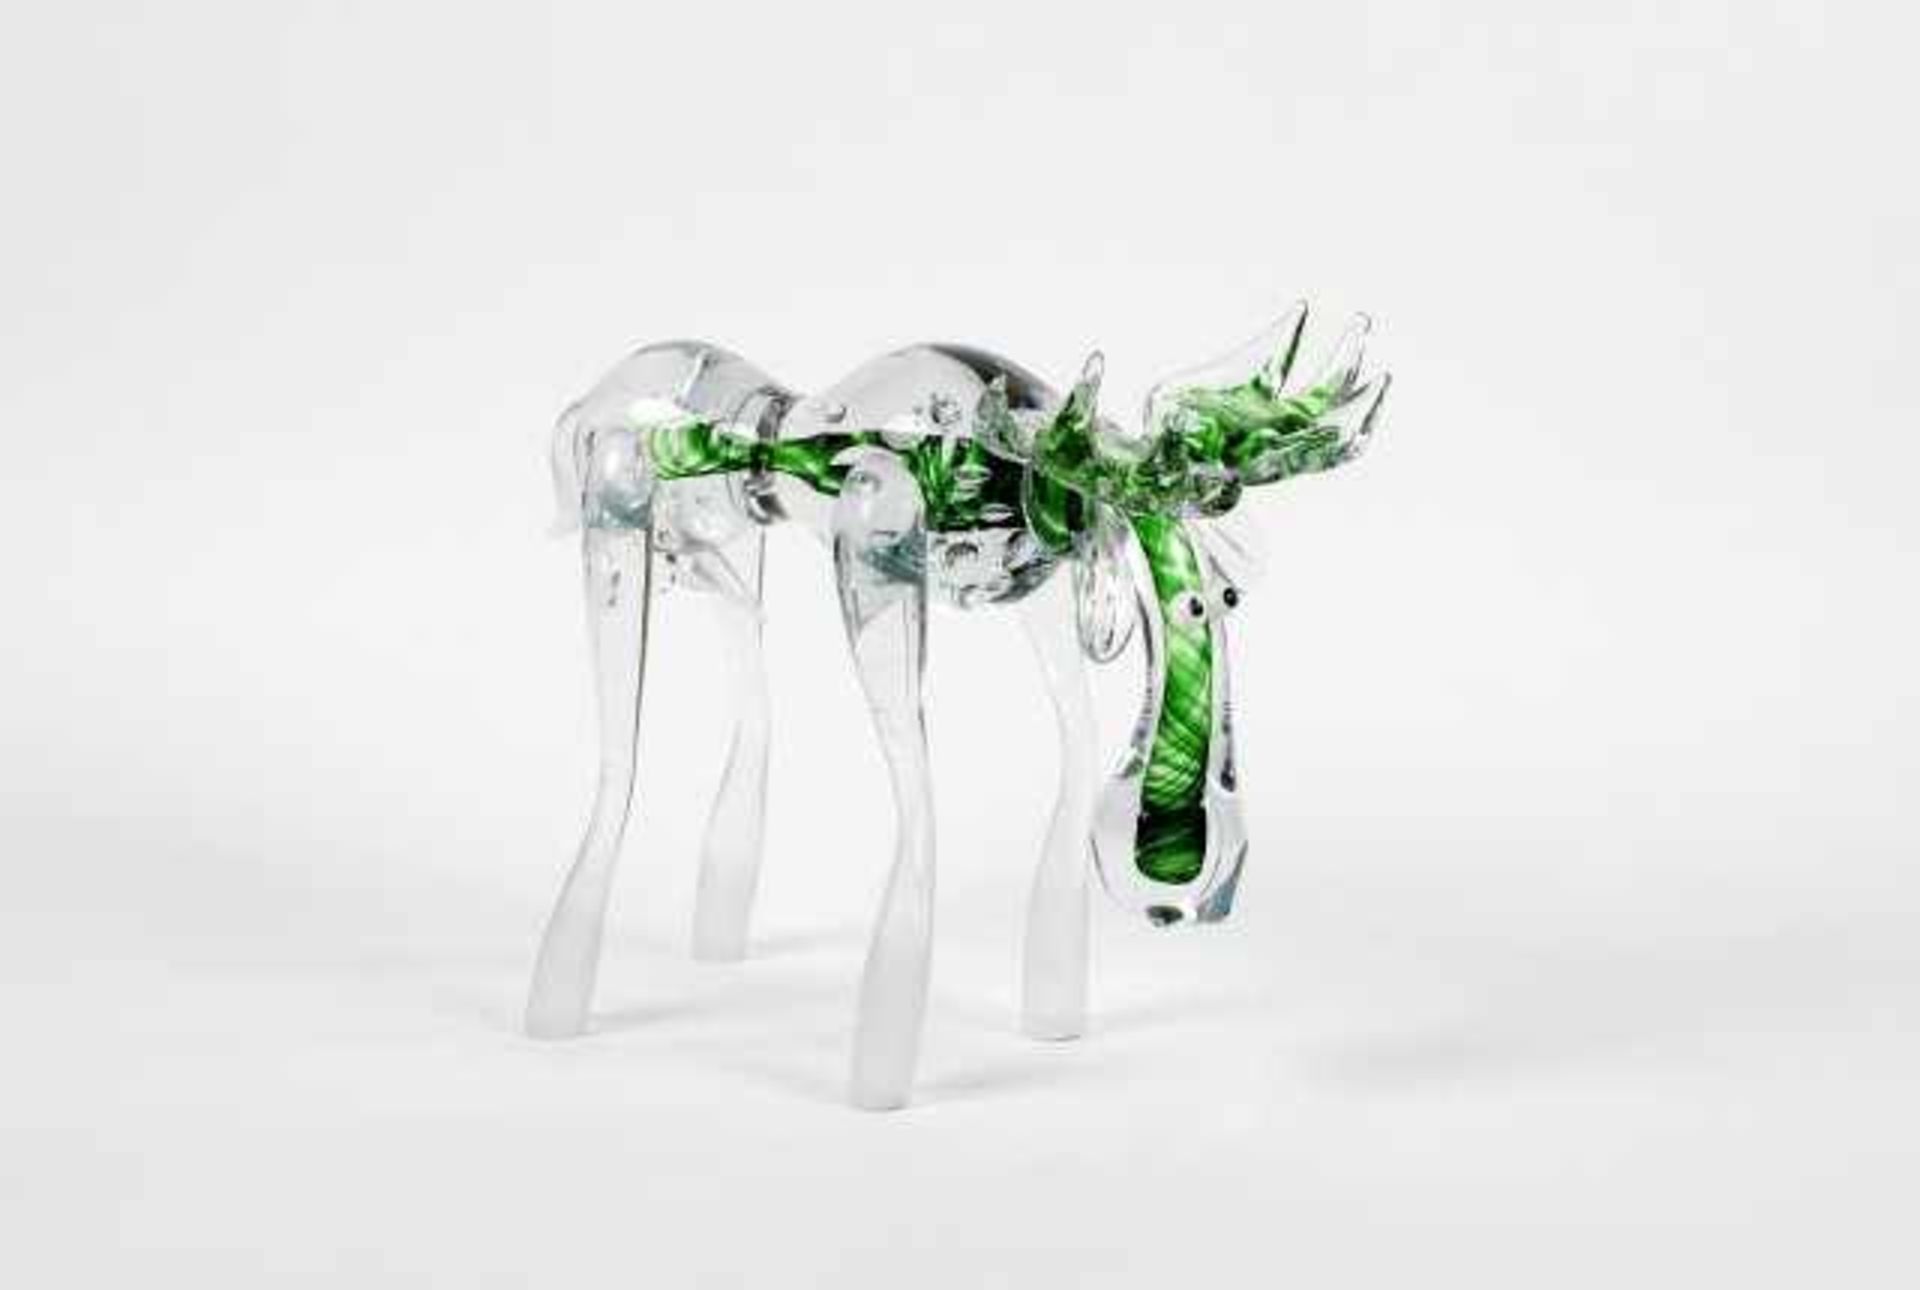 Tierfigur "Elch" handverarbeitetes grün überfangenes Glas, farblos überfangen, signiert V.